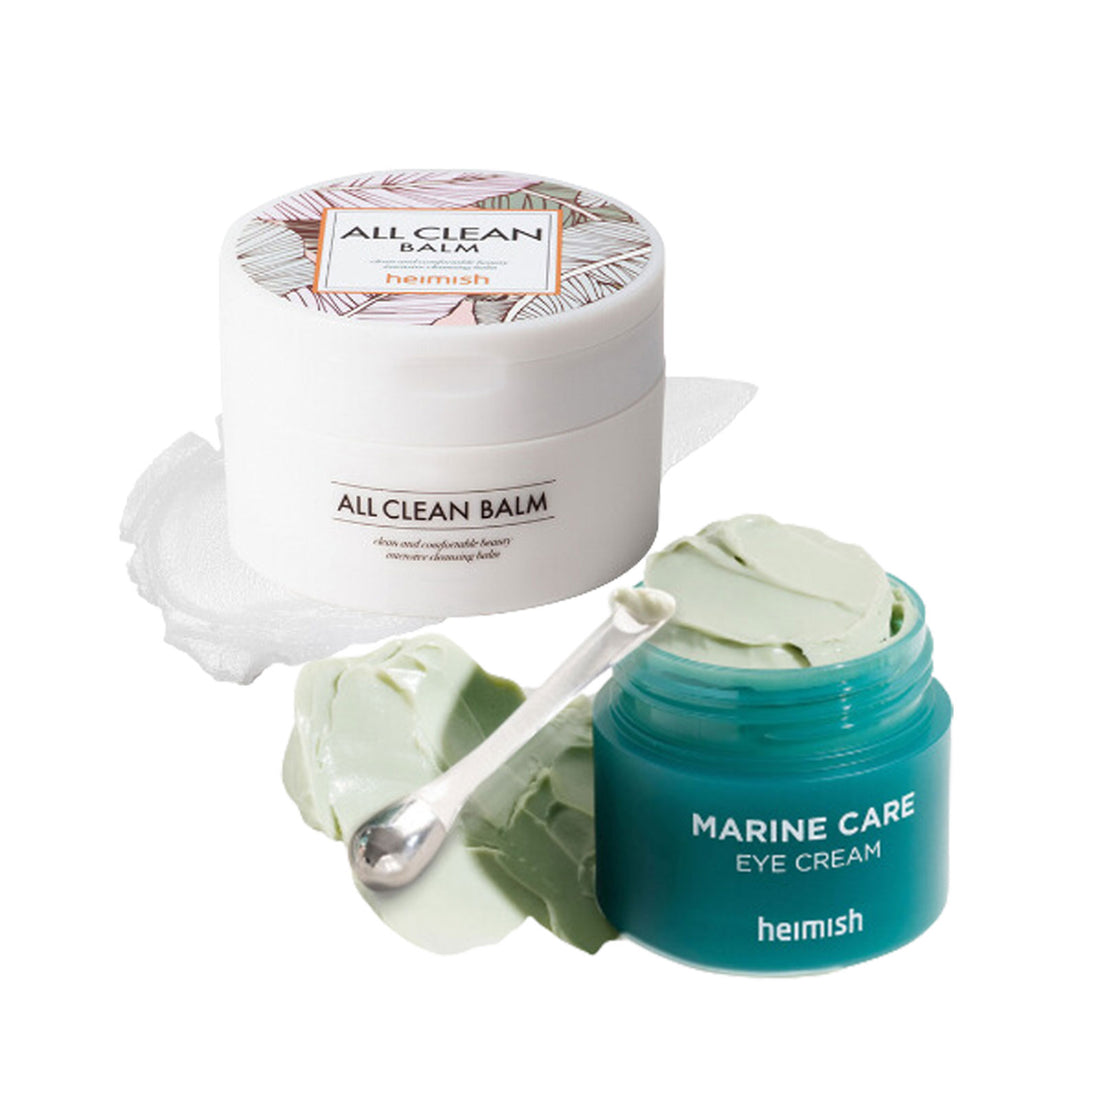 All Clean Balm 120ml +Marine Care Eye Cream 30ml/1.01fl.oz